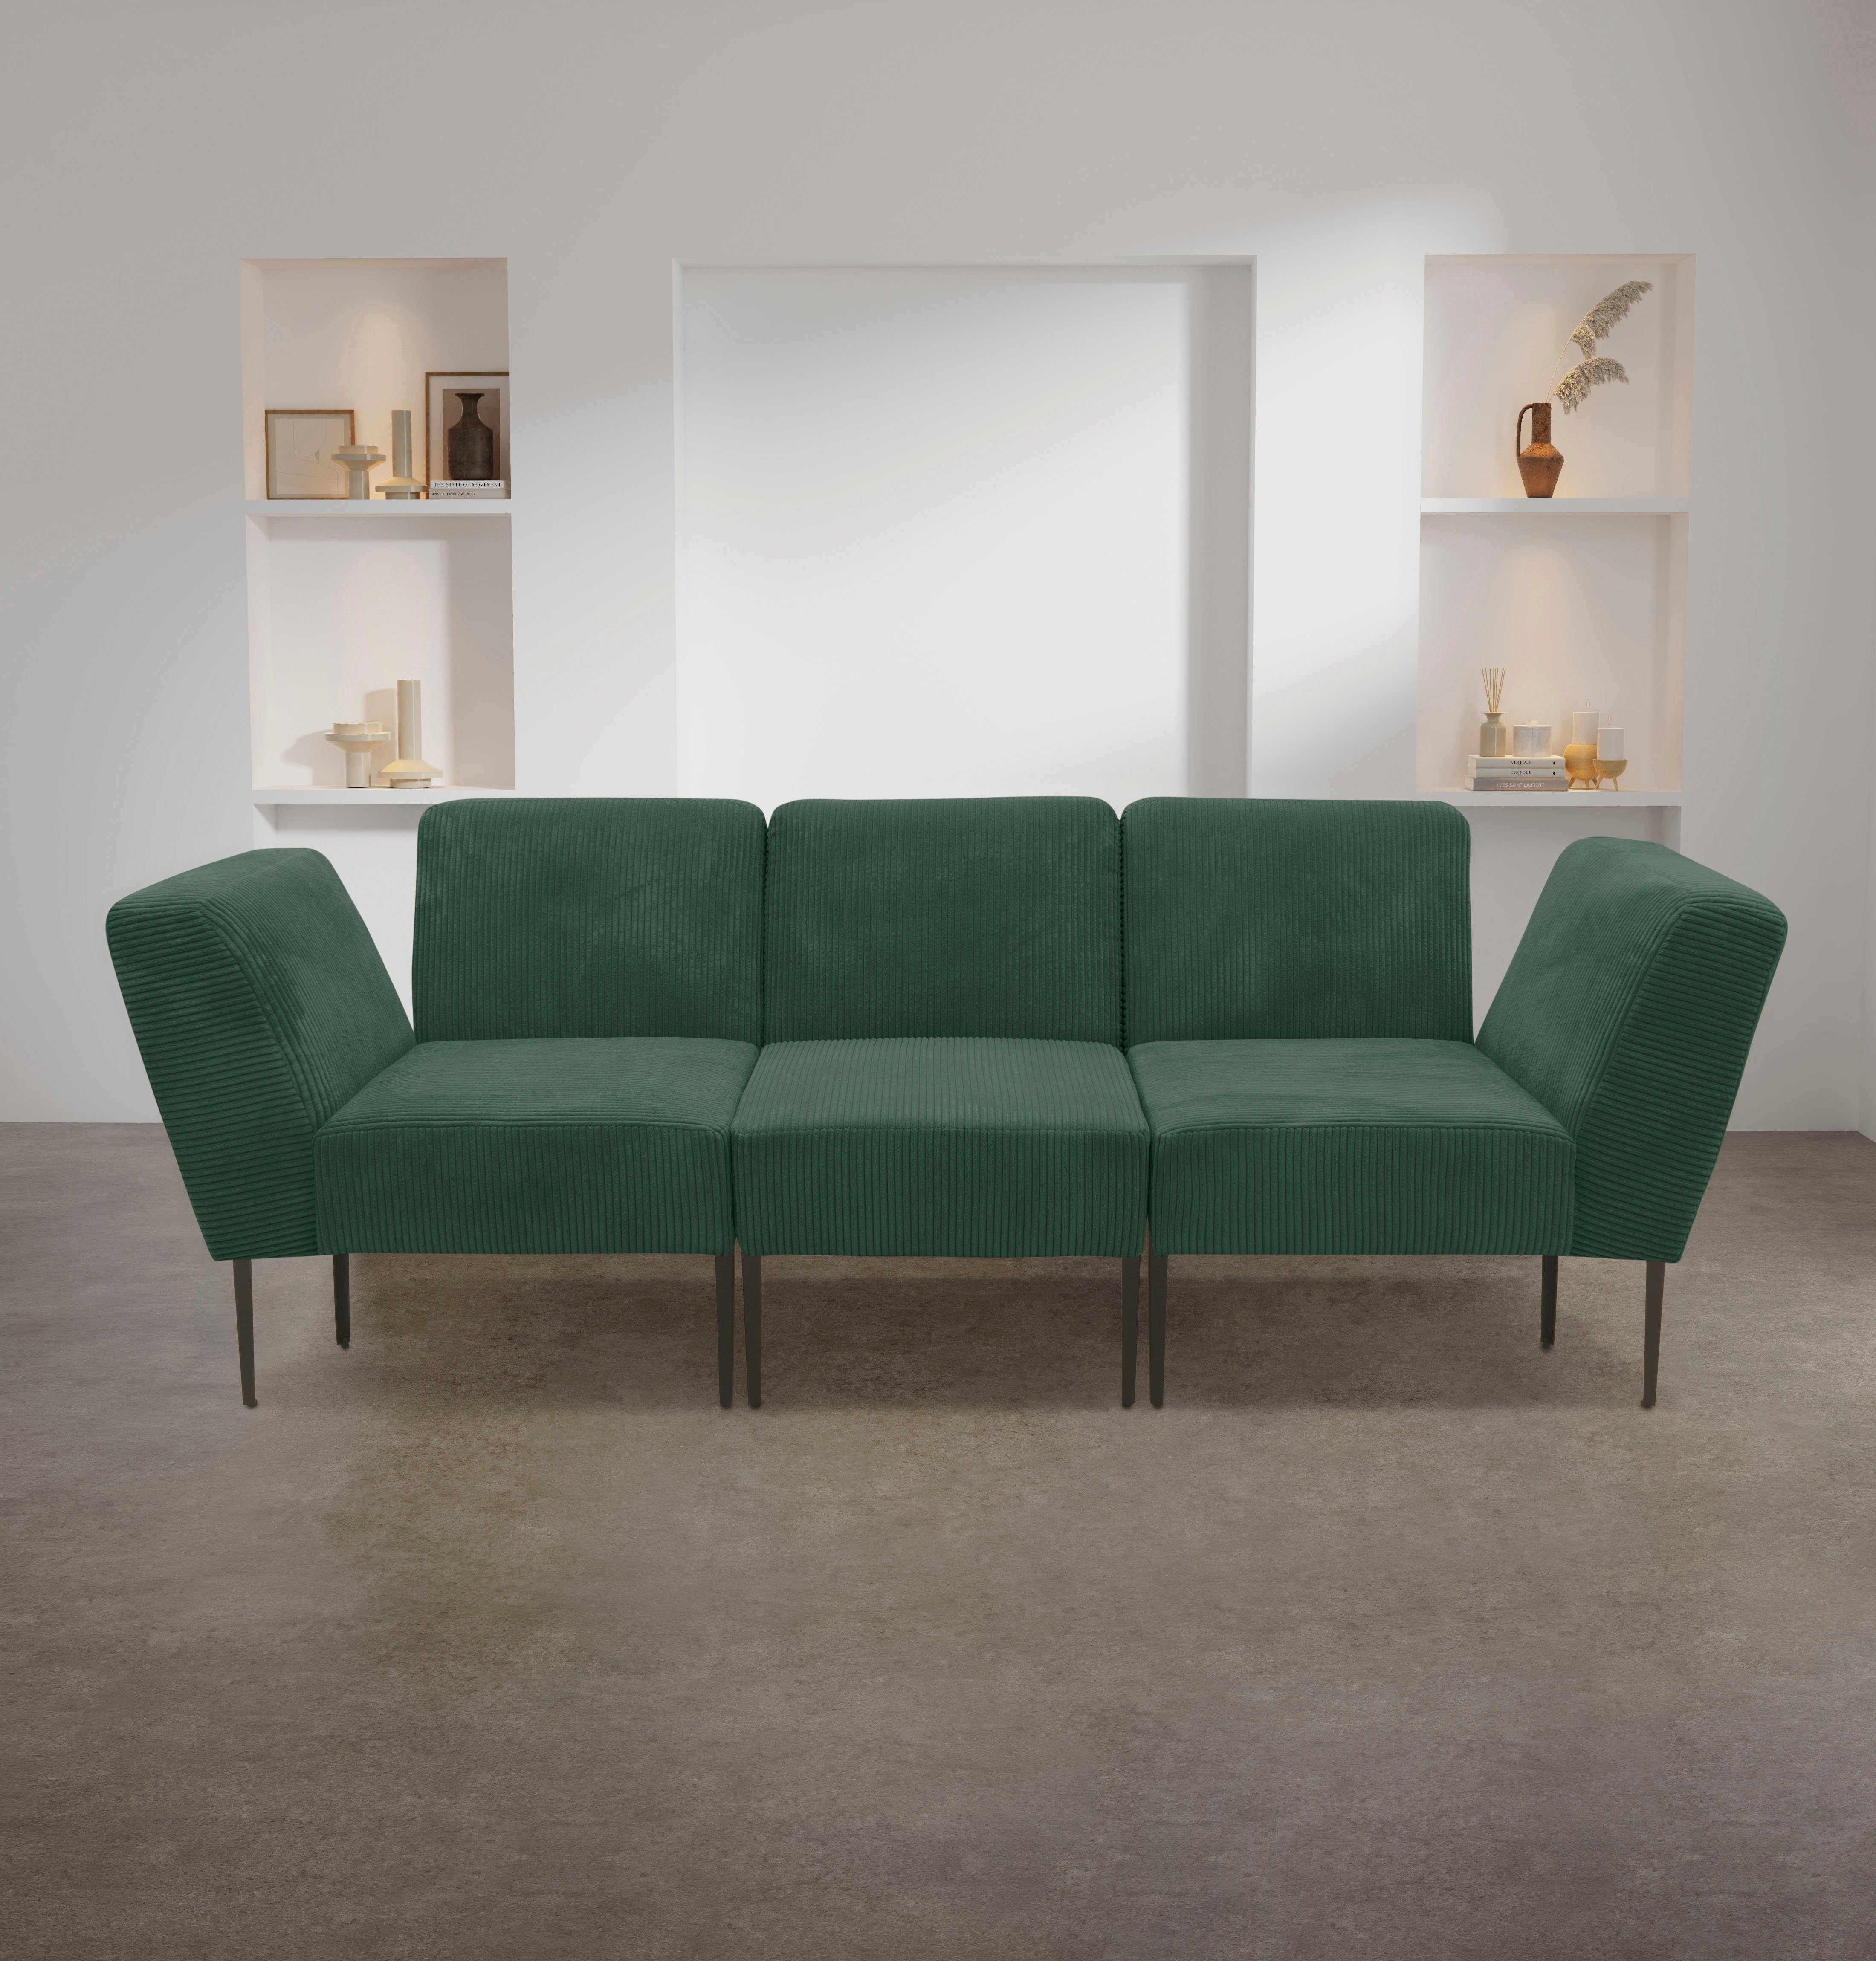 Abschluss Ecke oder - 700010, Sofa-Eckelement collection dunkelgrün DOMO einsetzbar Modul als